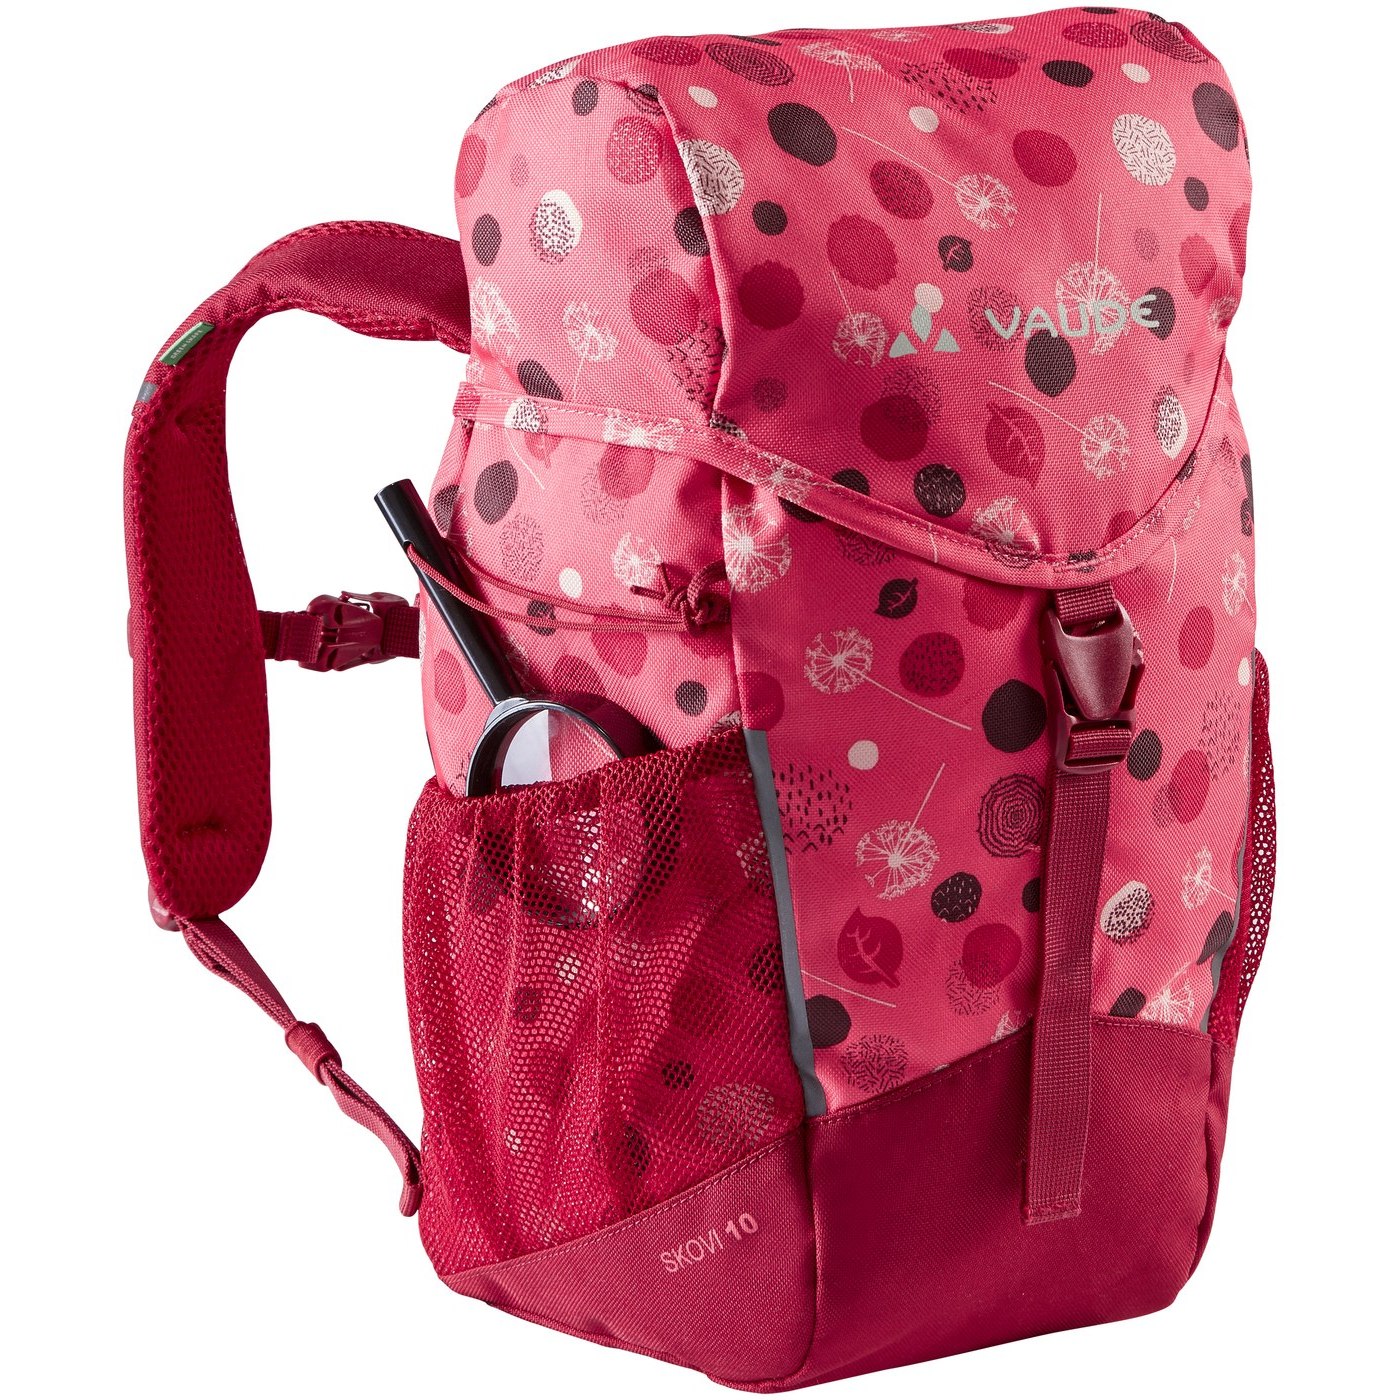 Produktbild von Vaude Skovi 10L Rucksack Kinder - bright pink/cranberry